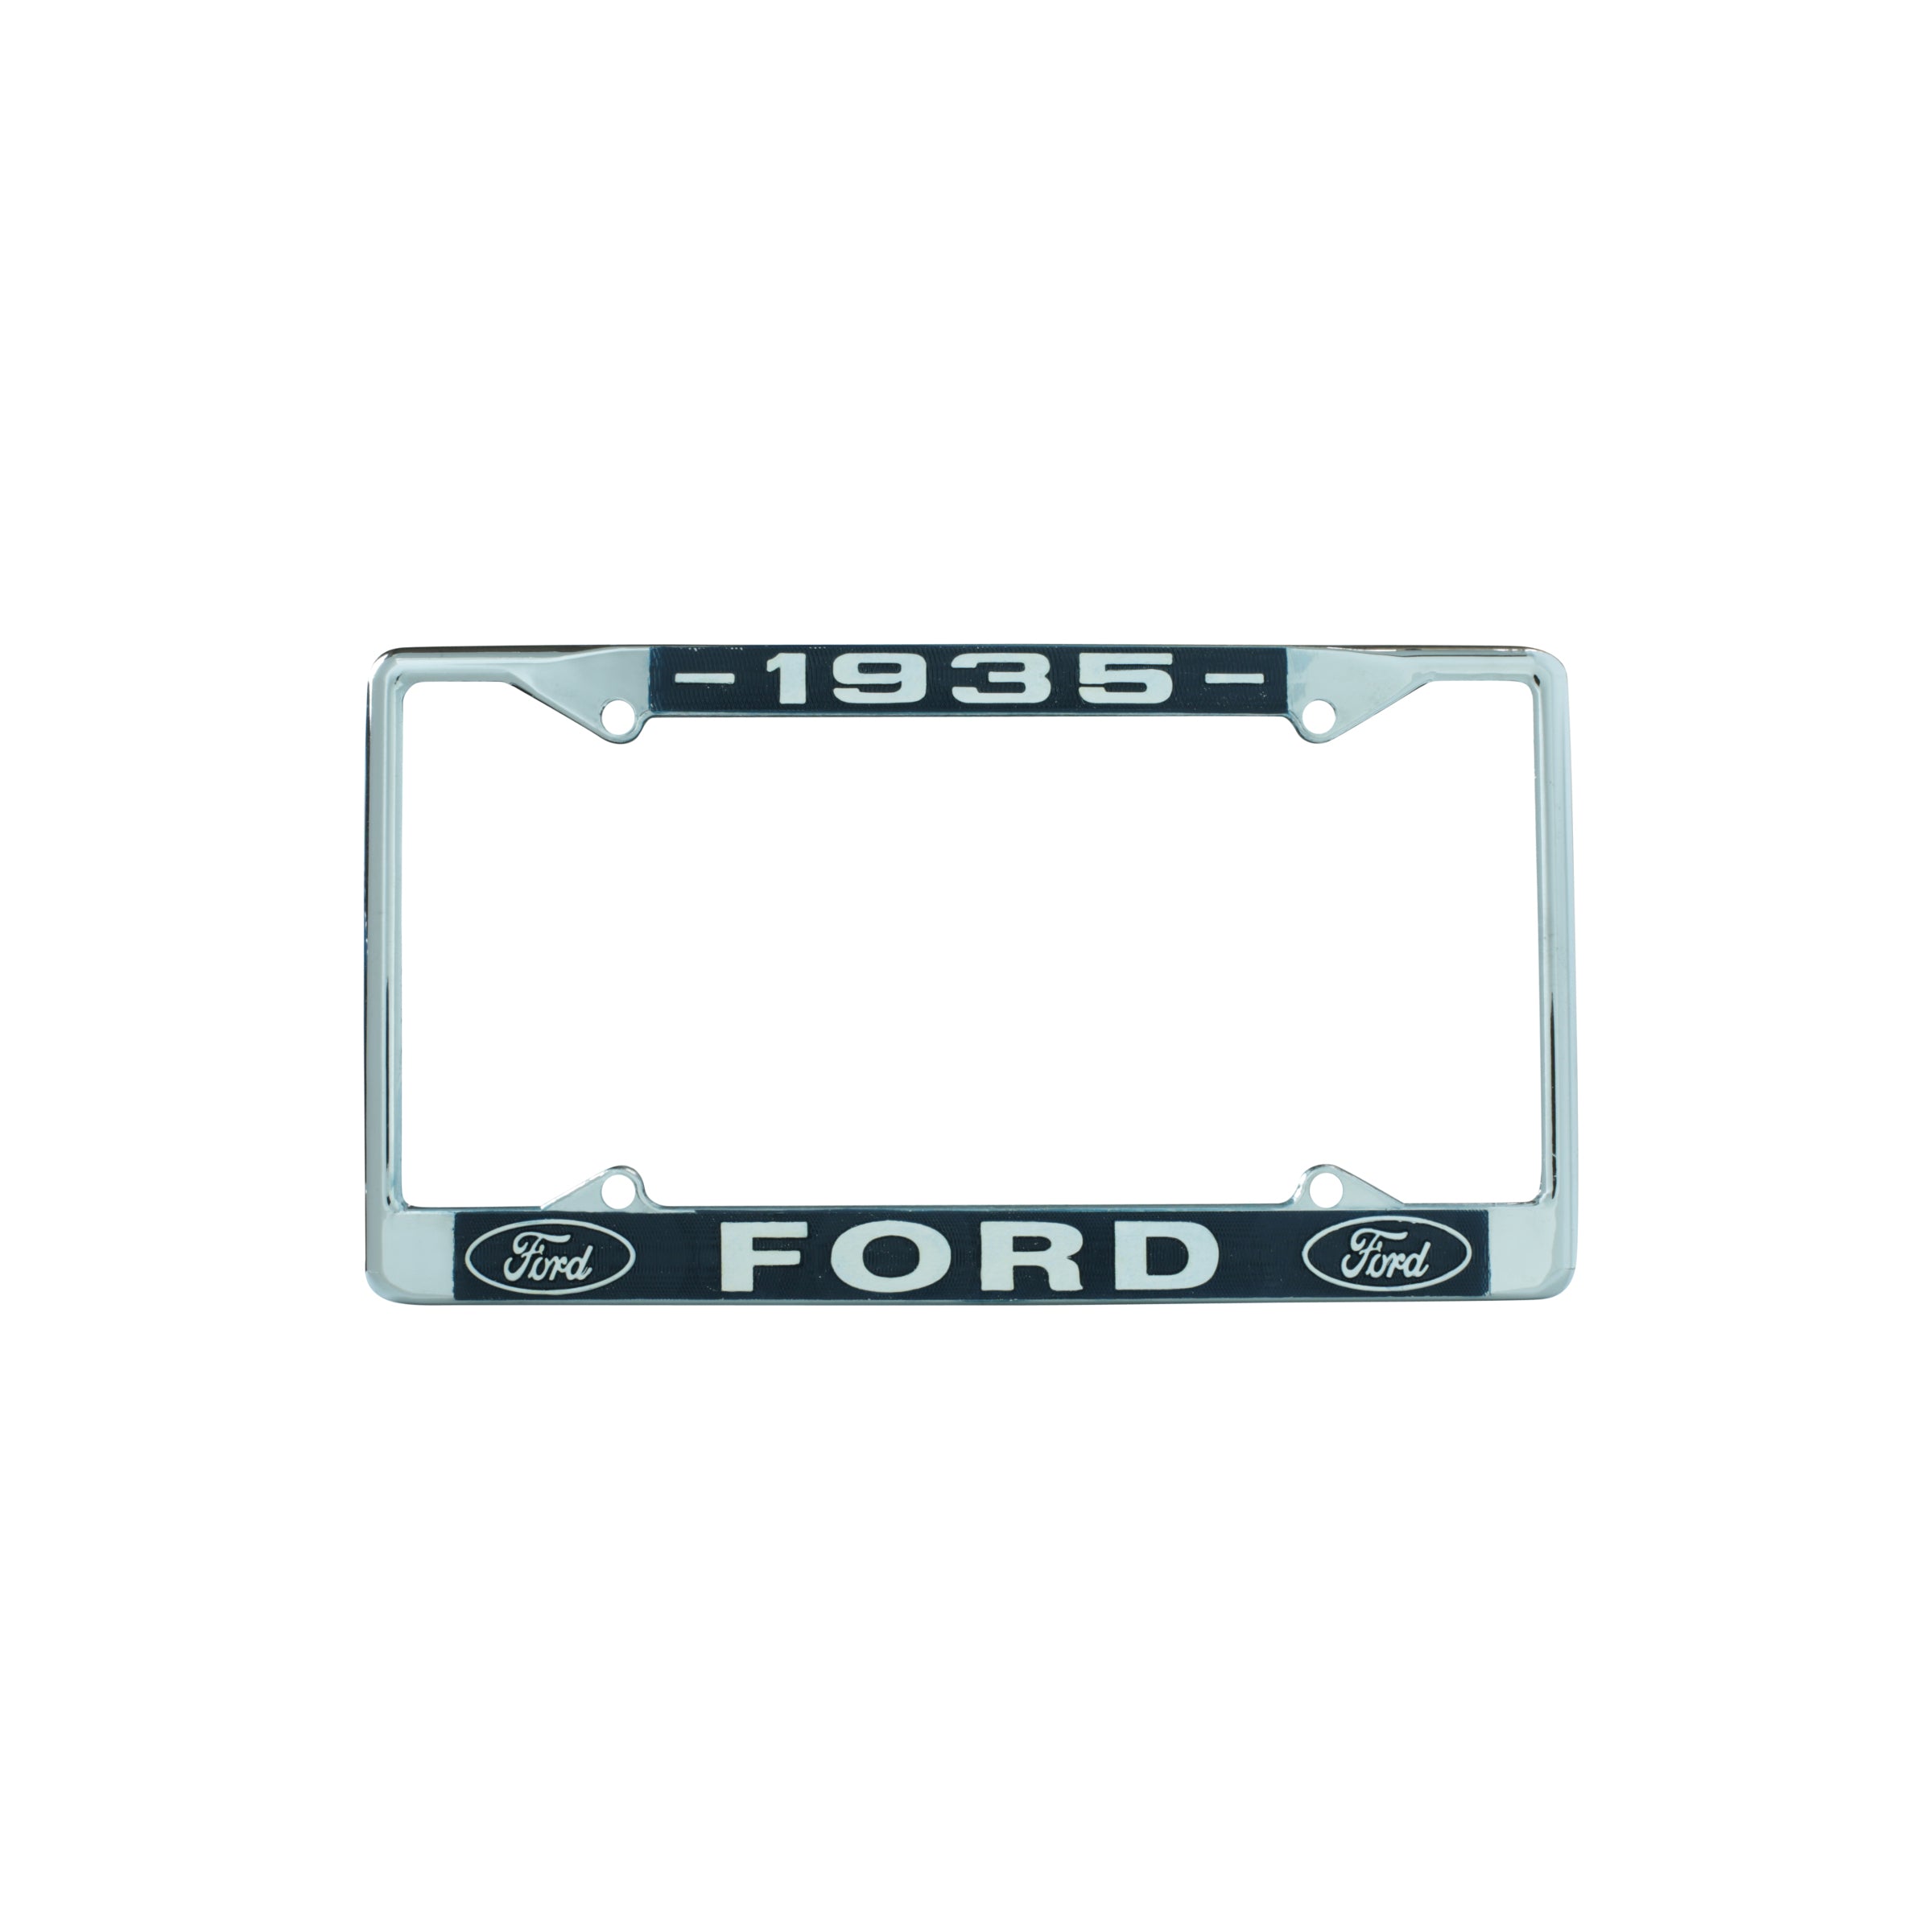 License Plate Frame • 1935 Ford